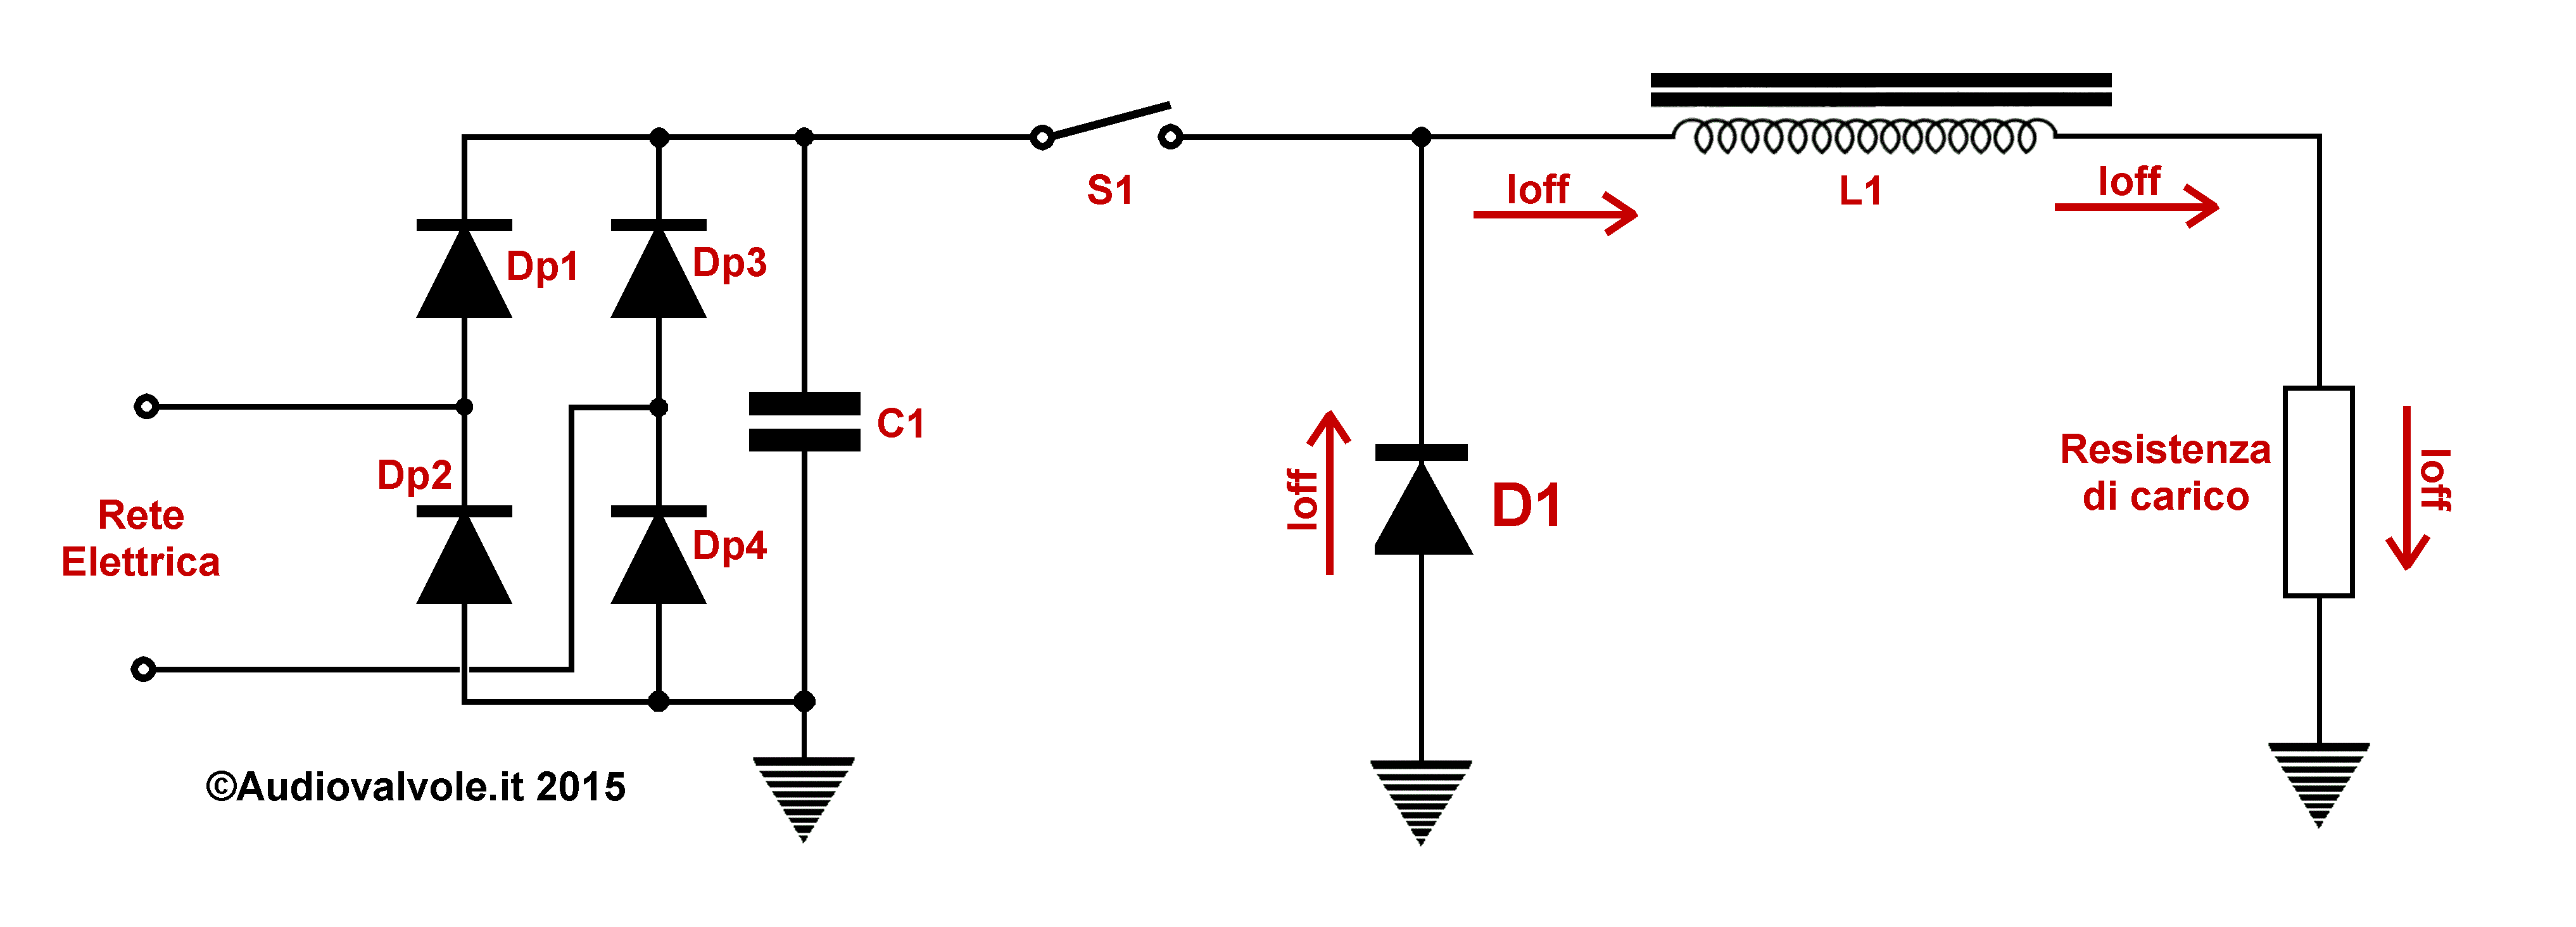 Schema di principio e il funzionamento di un alimentatore switching del tipo step-down 